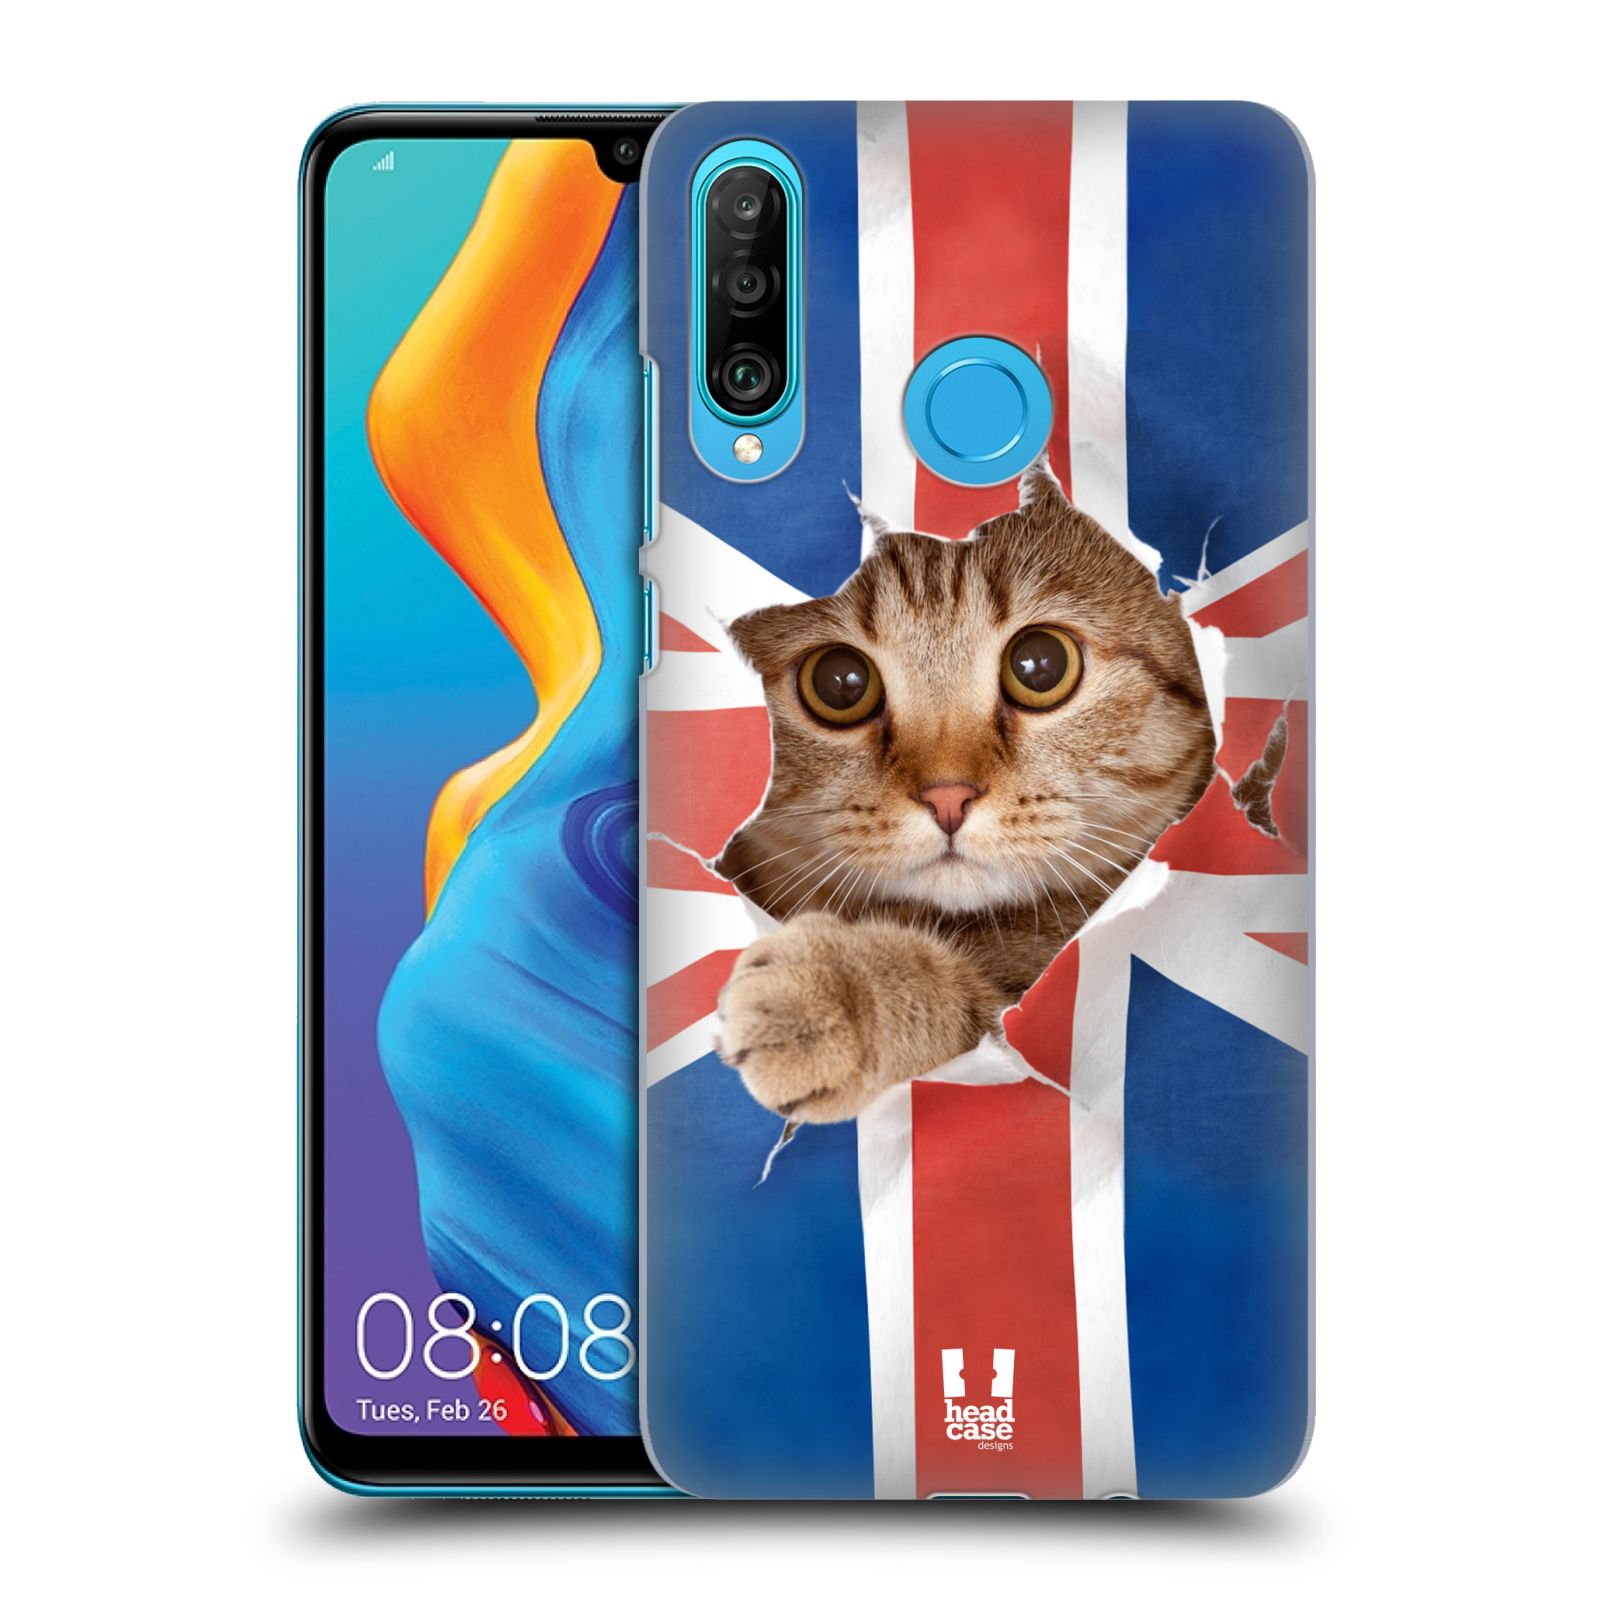 Pouzdro na mobil Huawei P30 LITE - HEAD CASE - vzor Legrační zvířátka kočička a Velká Británie vlajka